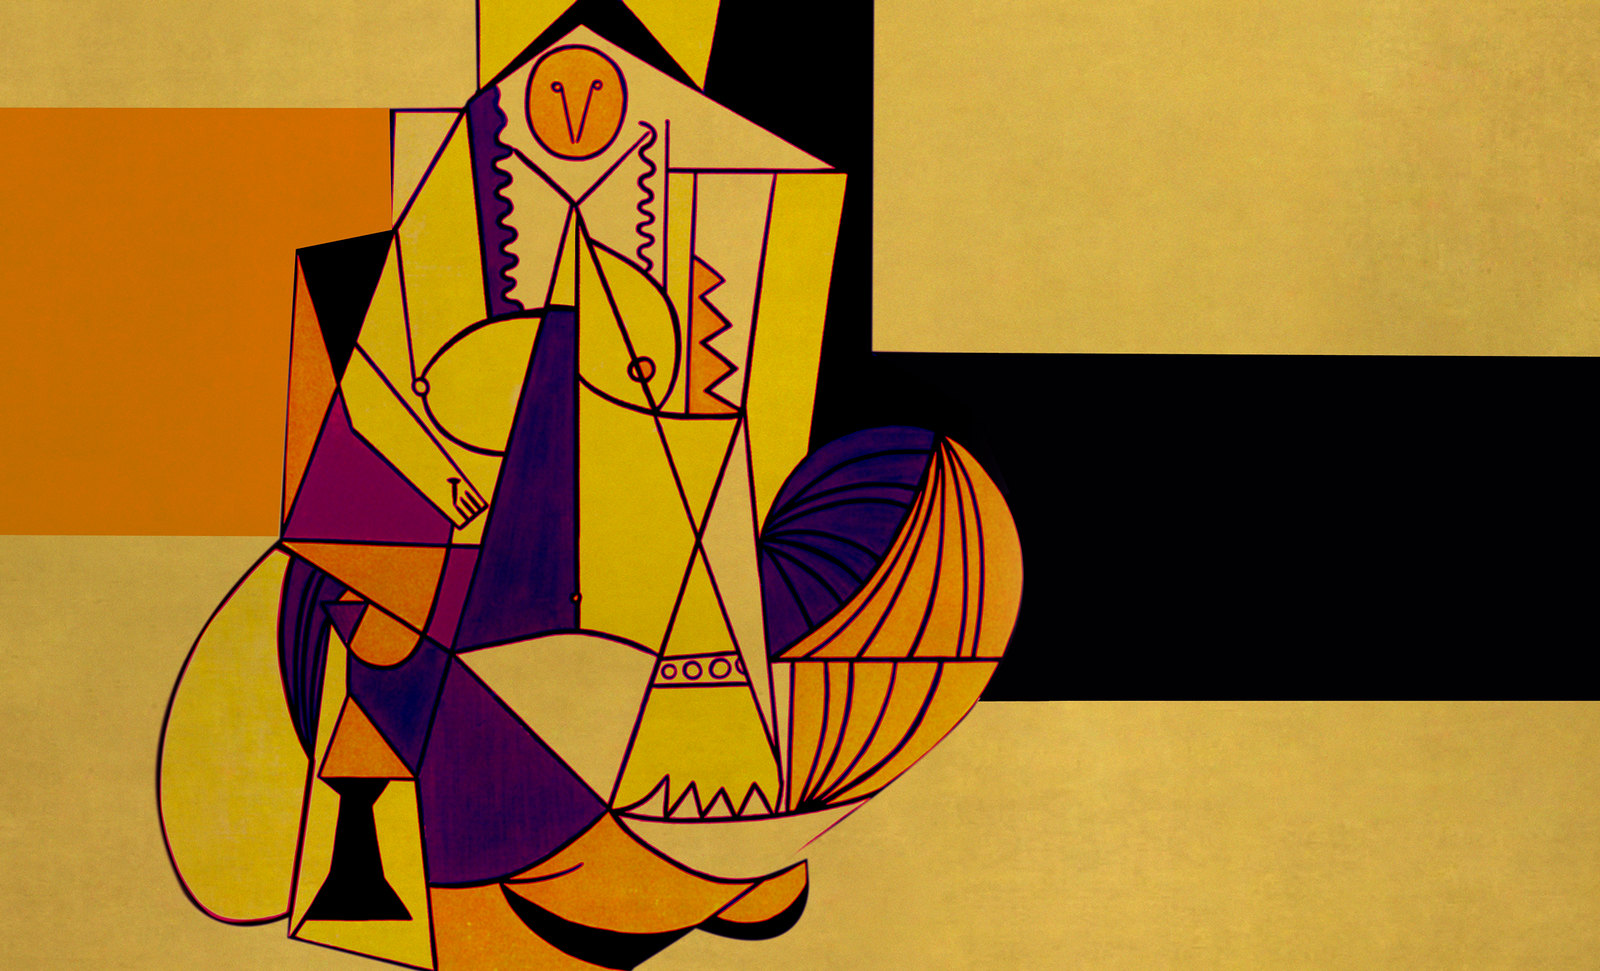 Odaliscas (Mujeres de Argel) yuxtaposición y deconstrucción de Pablo Picasso (1955), síntesis de Roy Lichtenstein (1963).